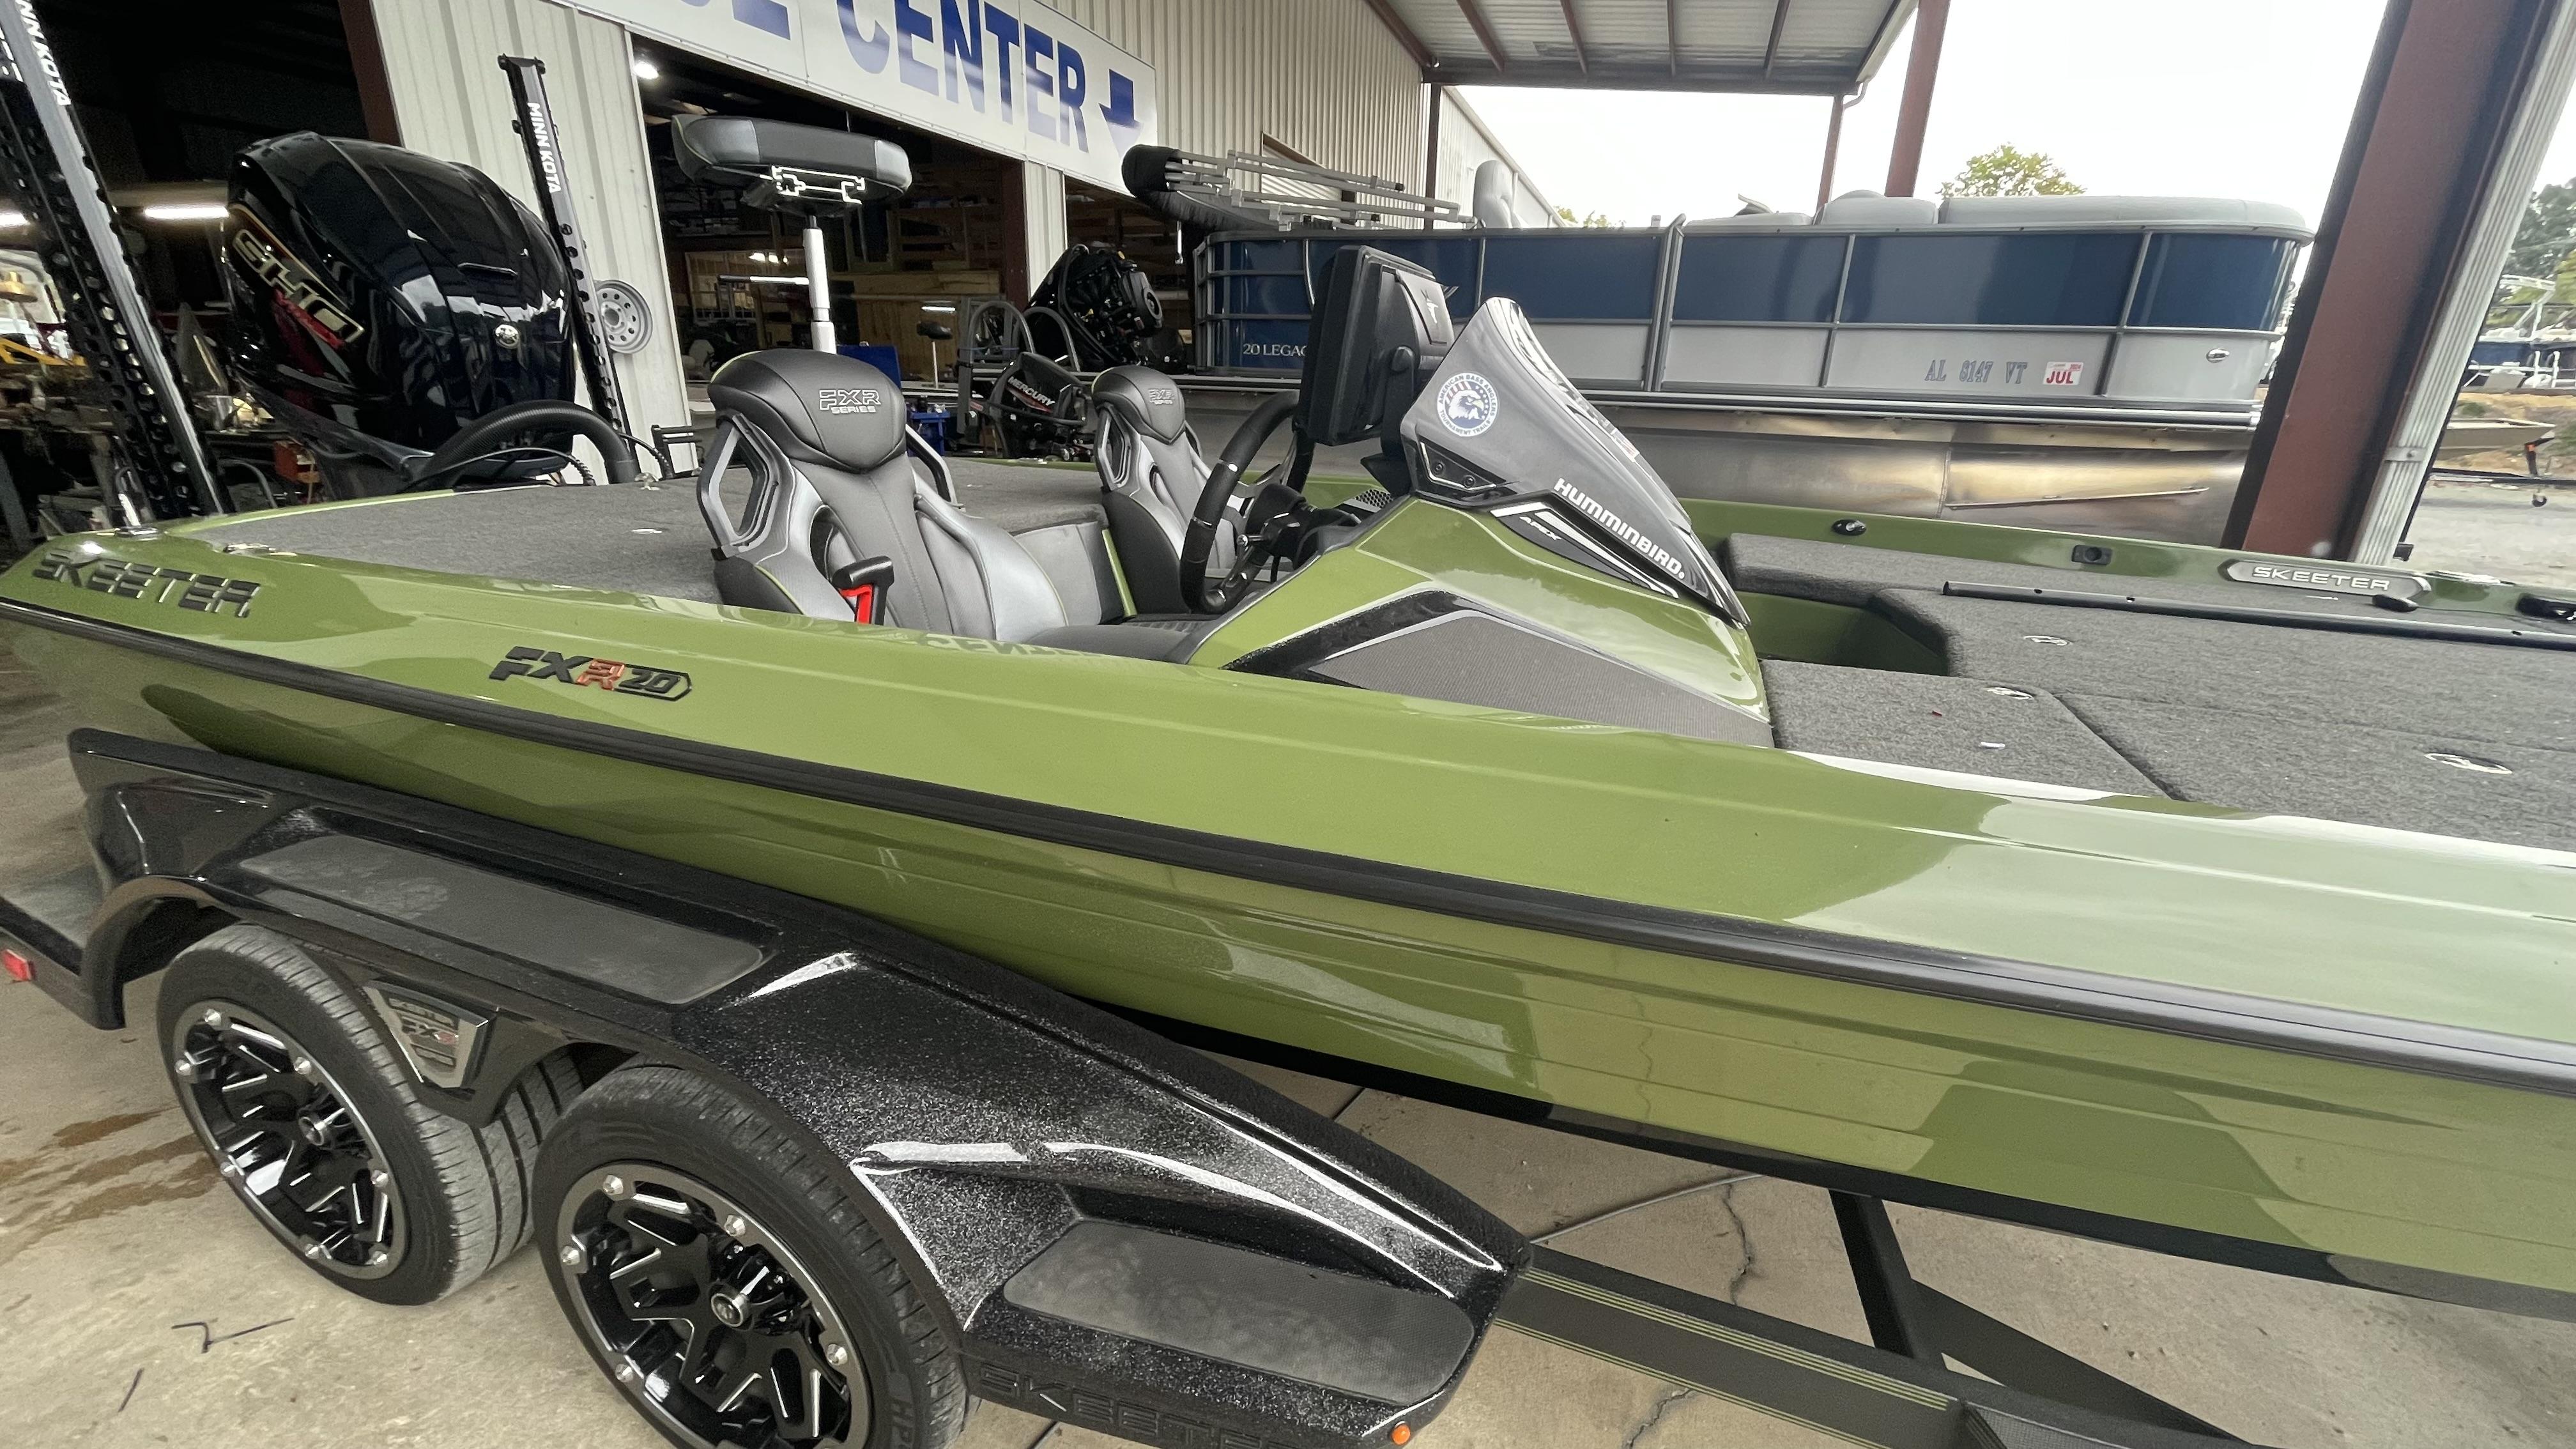 2022 Skeeter FXR20 Apex, Southside United States - boats.com